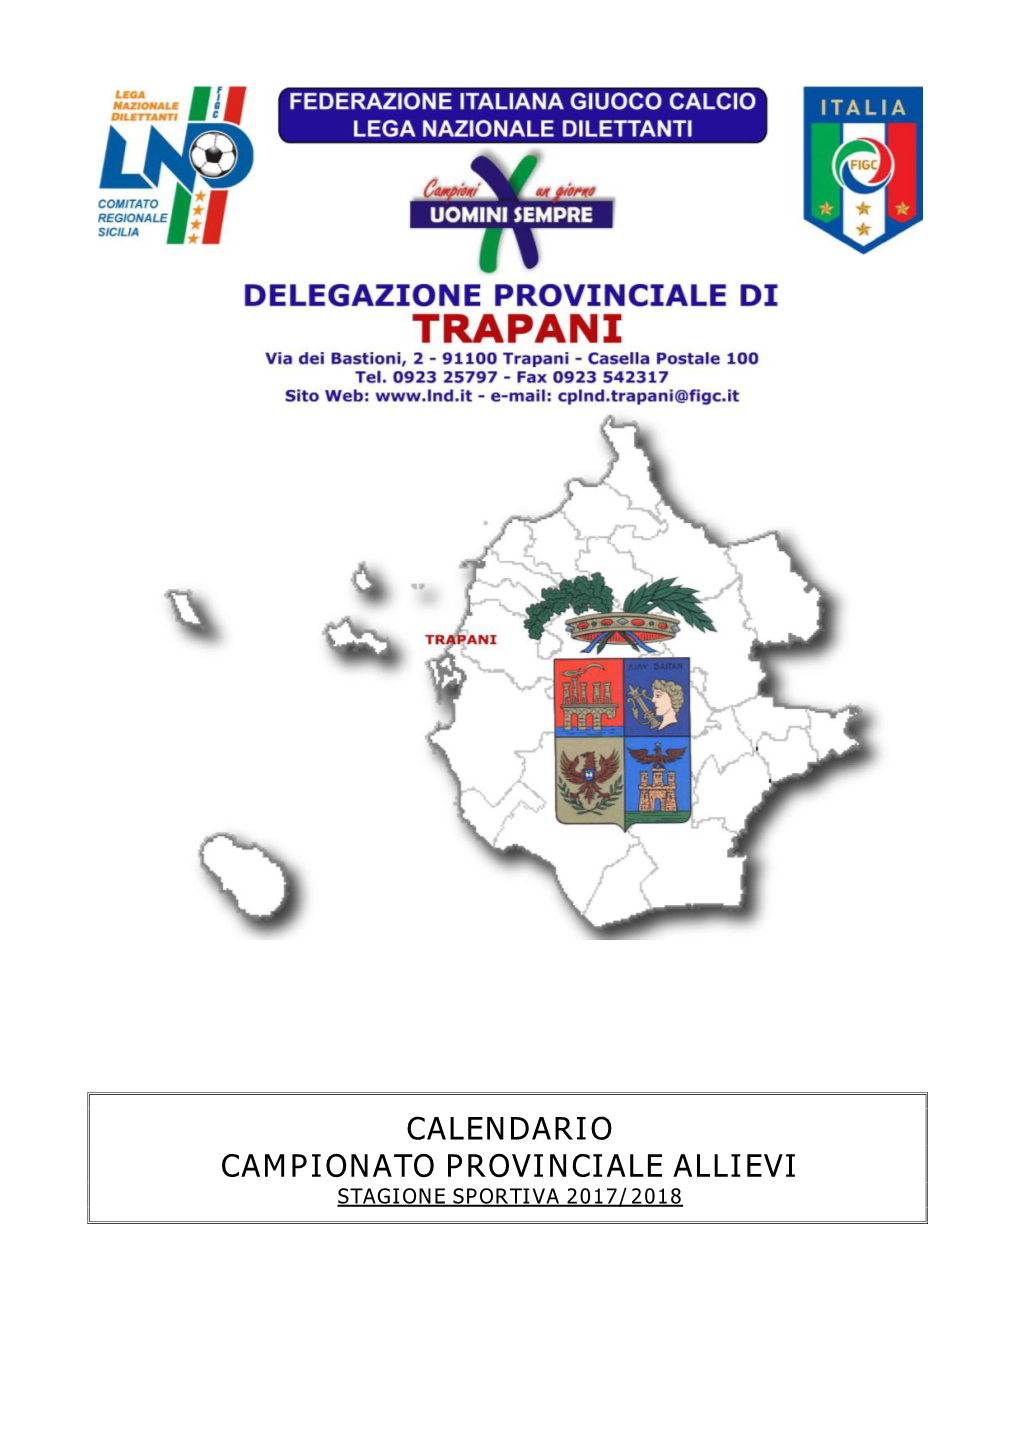 Calendario Campionato Provinciale Allievi Stagione Sportiva 2017/2018 Girone Di Andata